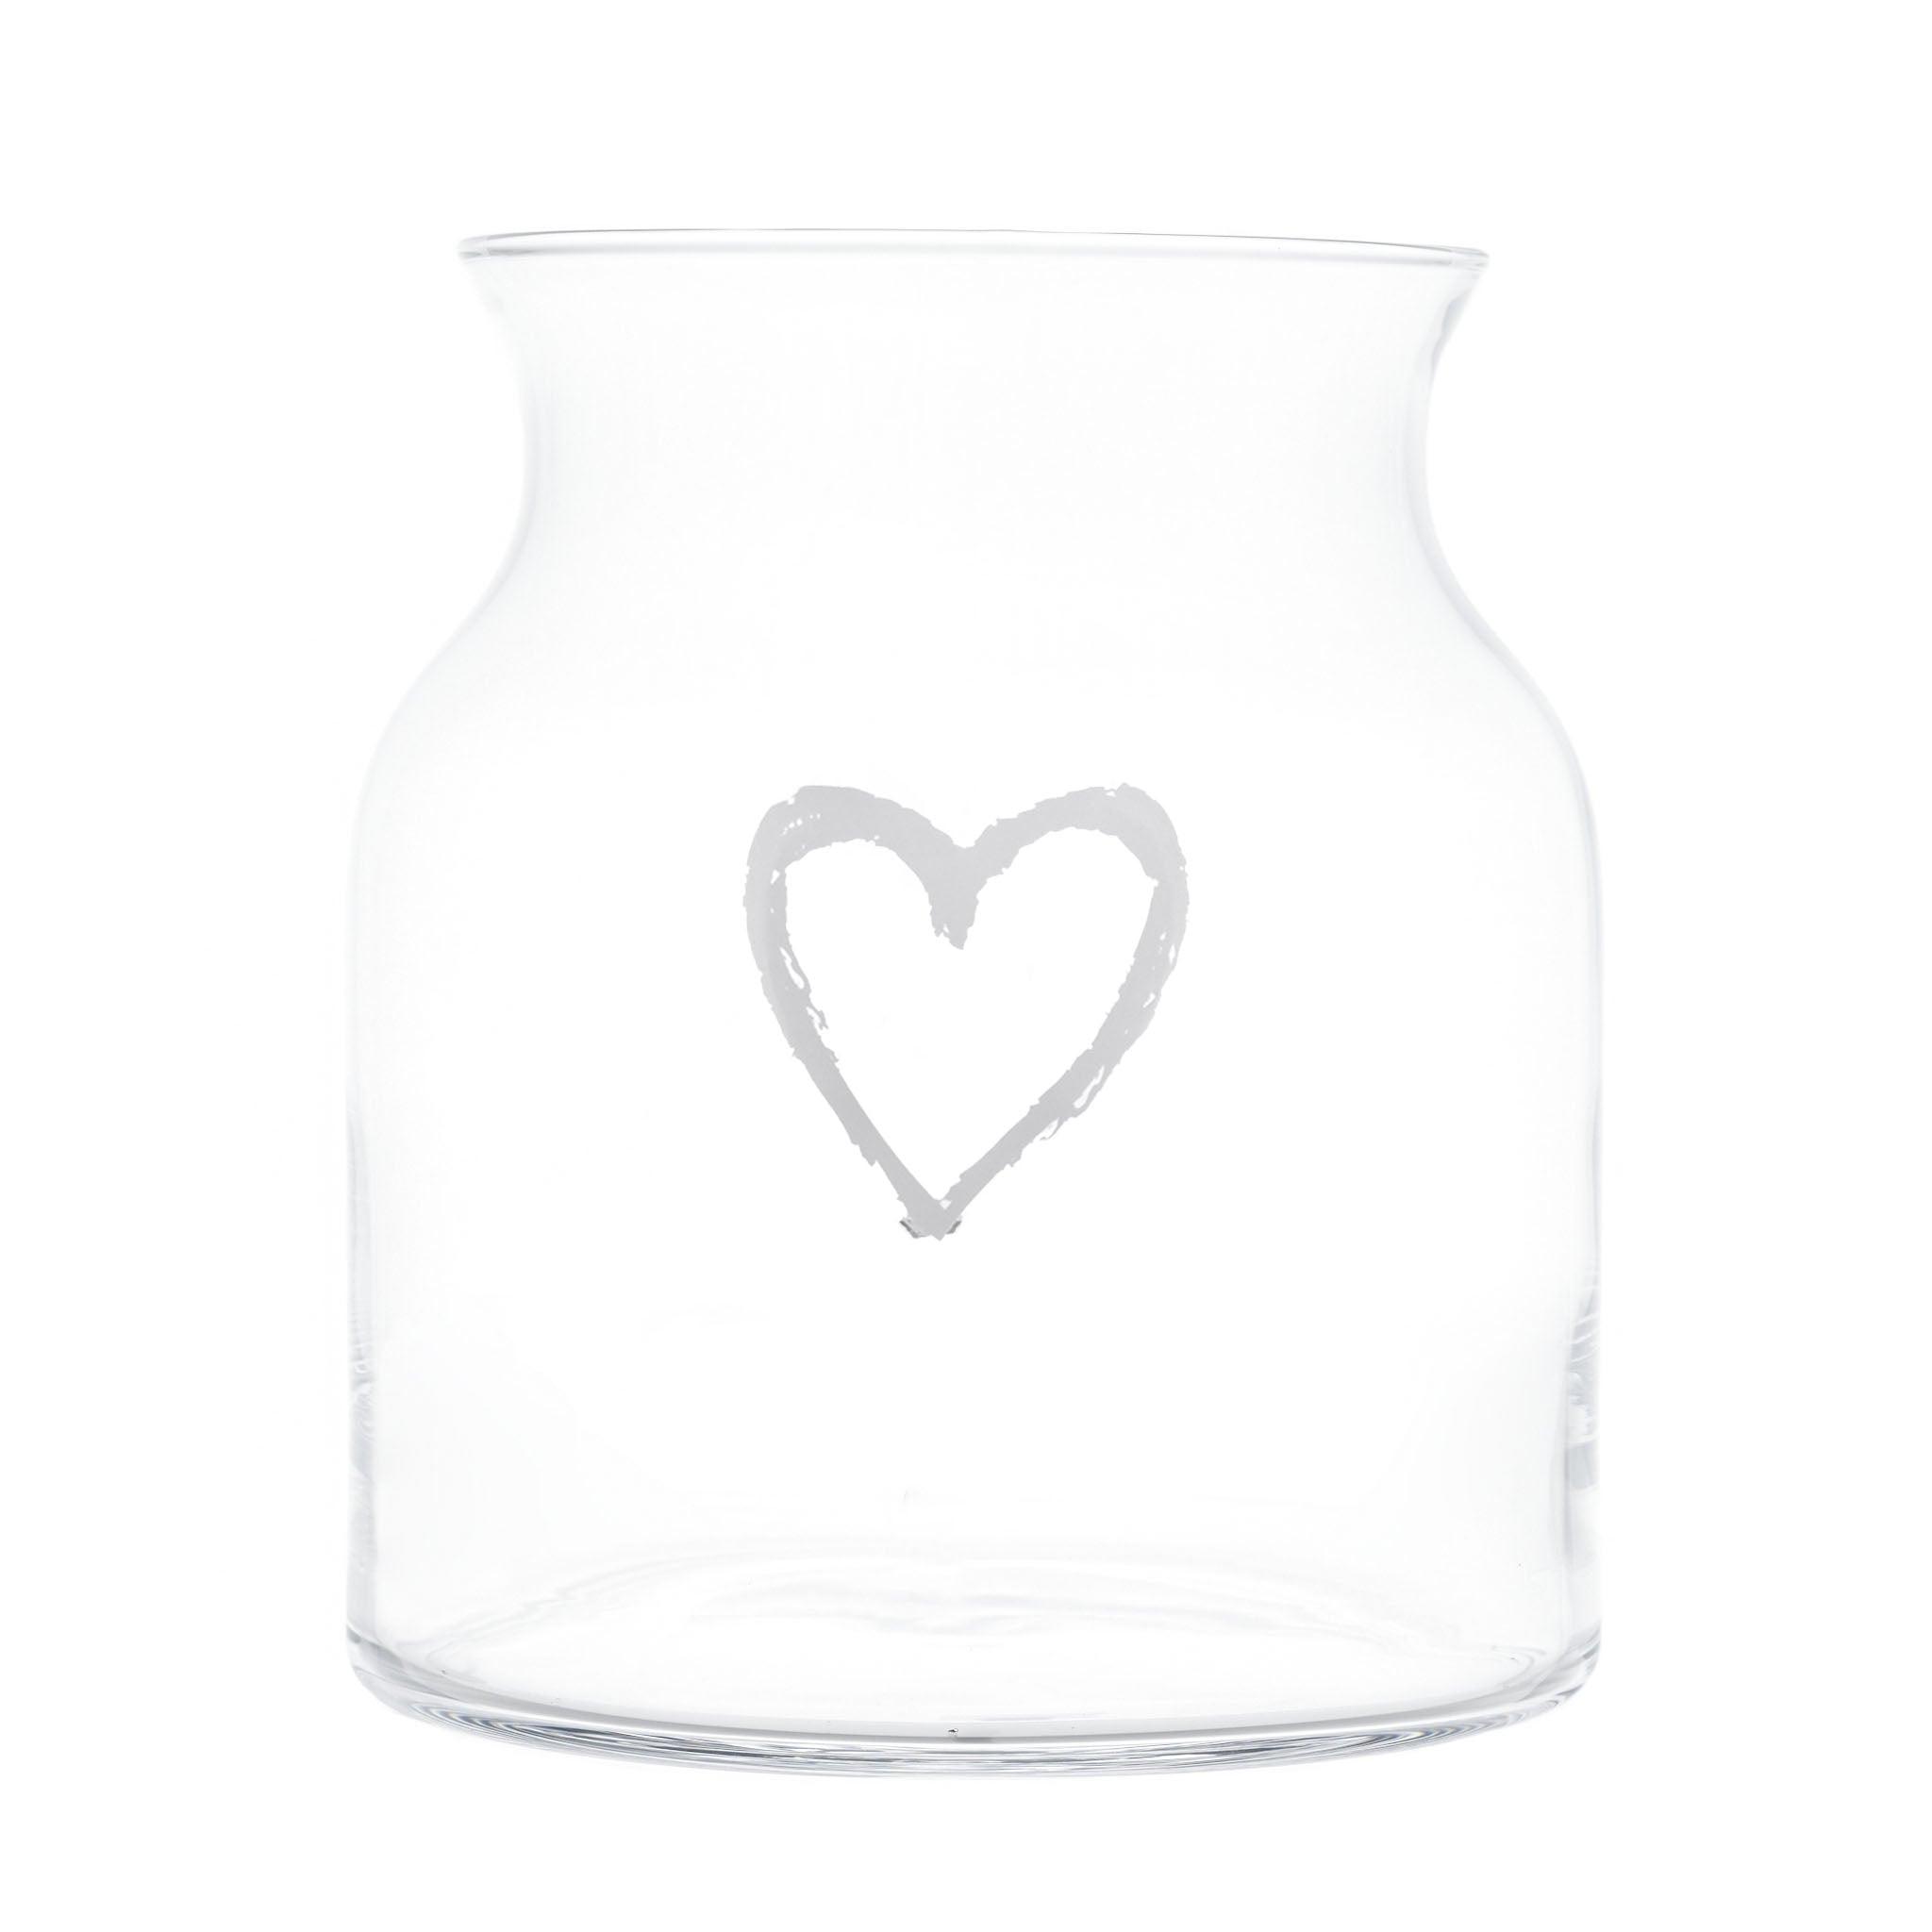 Braffiti Heart décorer le vase Plass